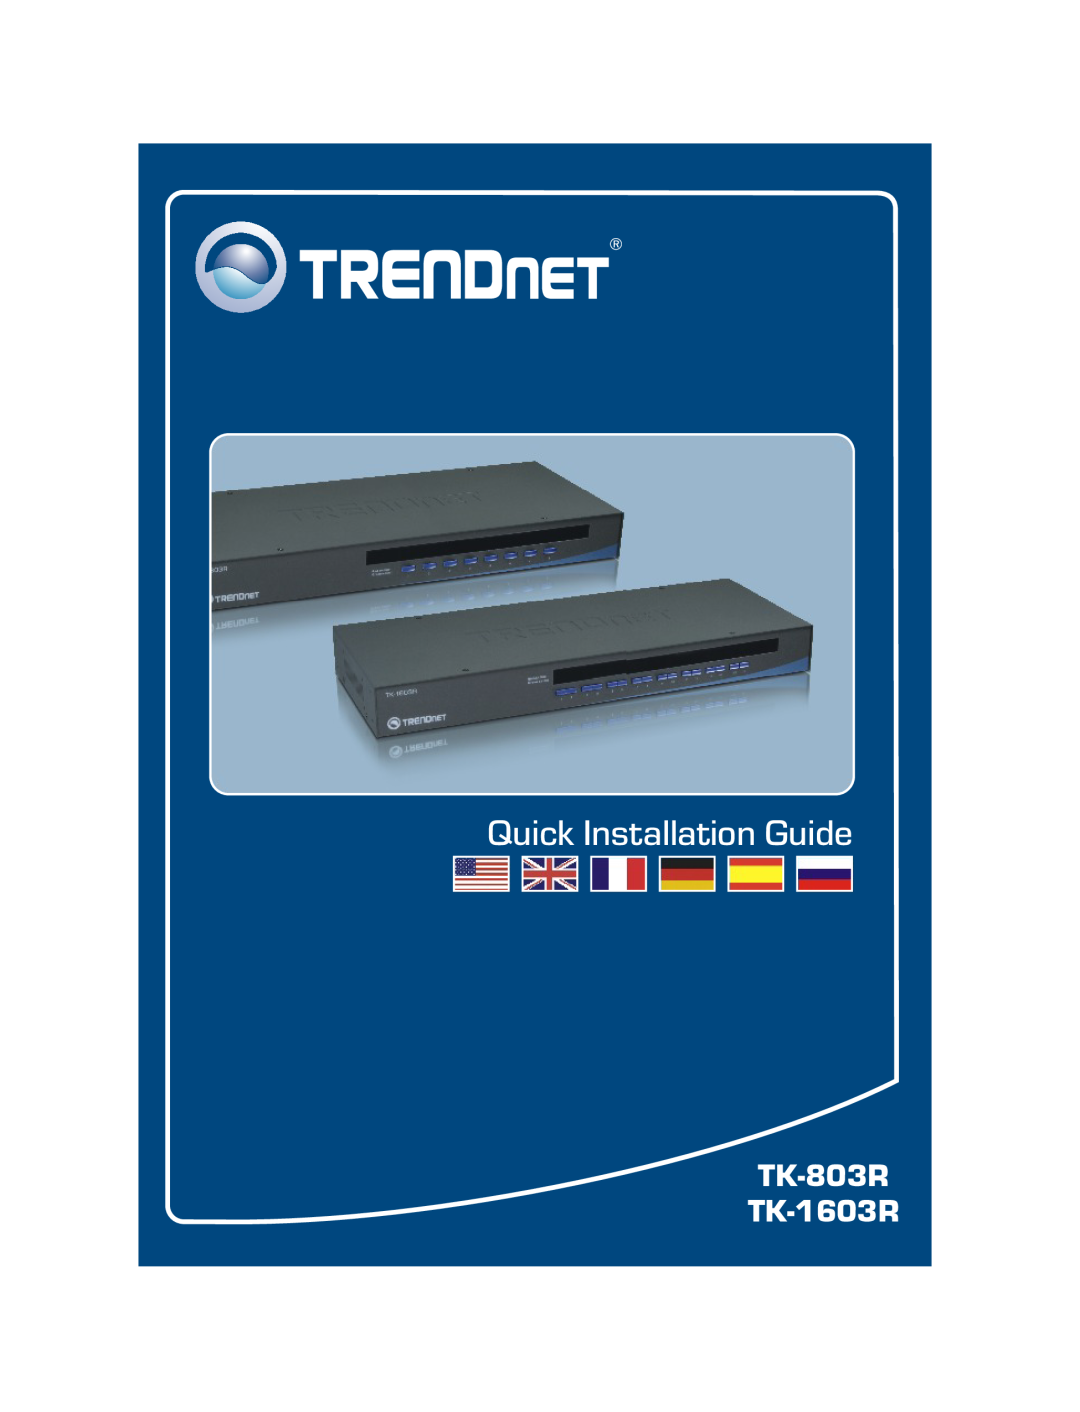 TRENDnet manual TK-803R TK-1603R, Quick Installation Guide 